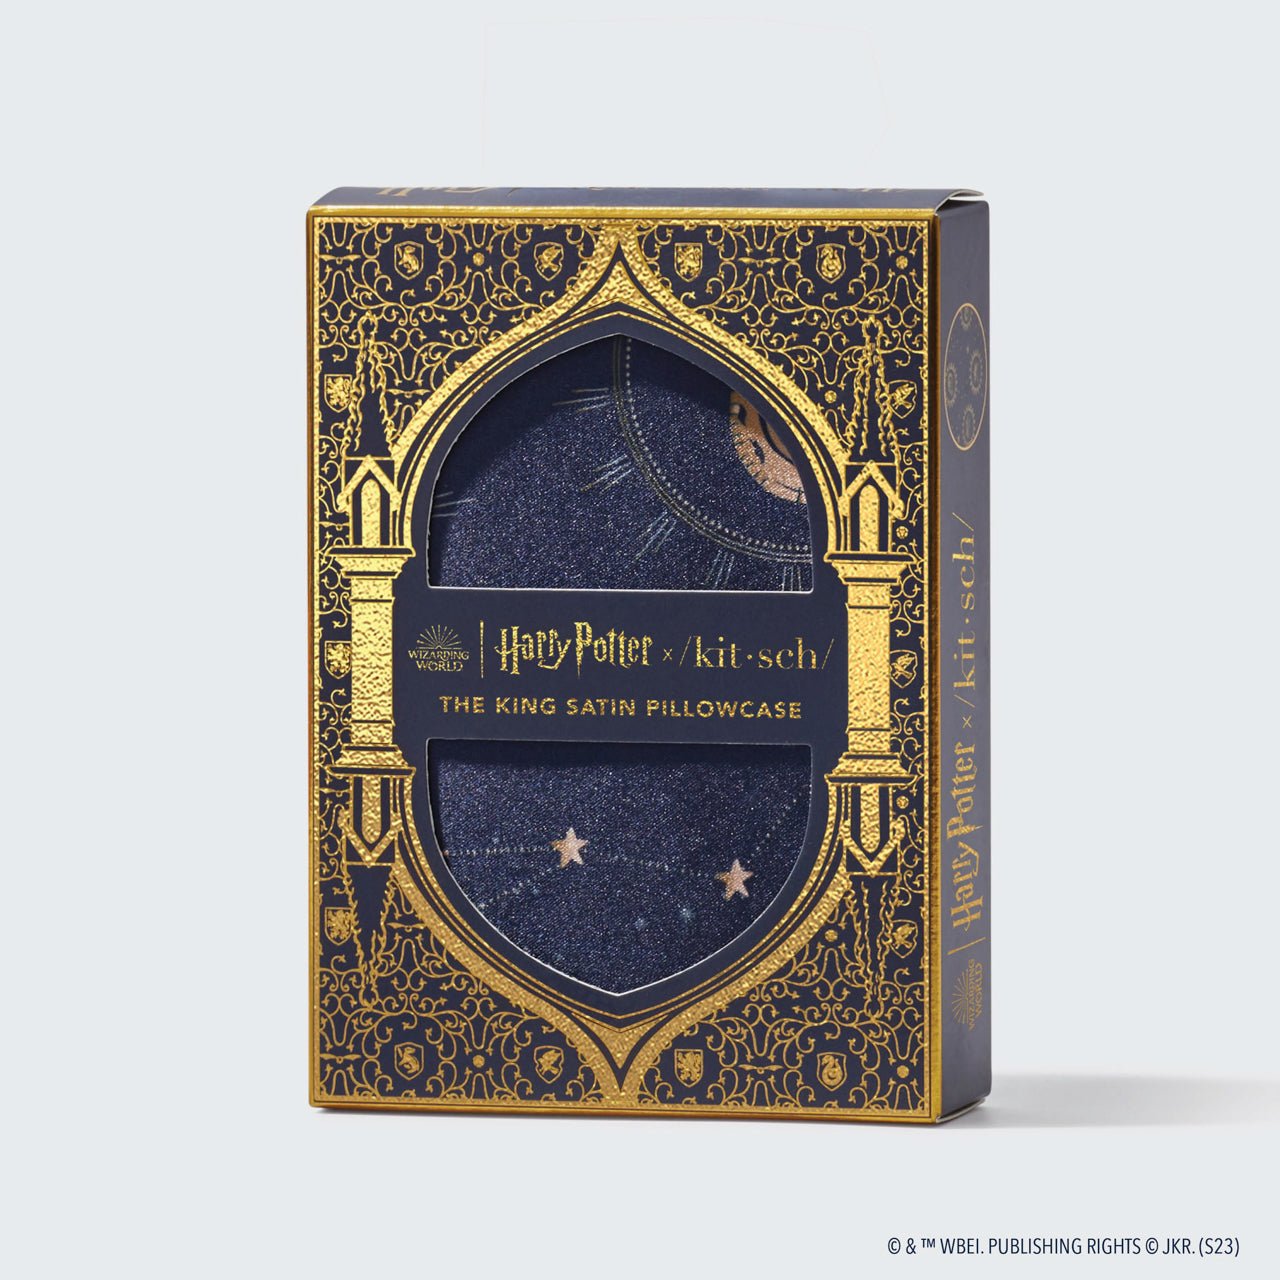 Pacchetto da collezione Harry Potter x Kitsch King